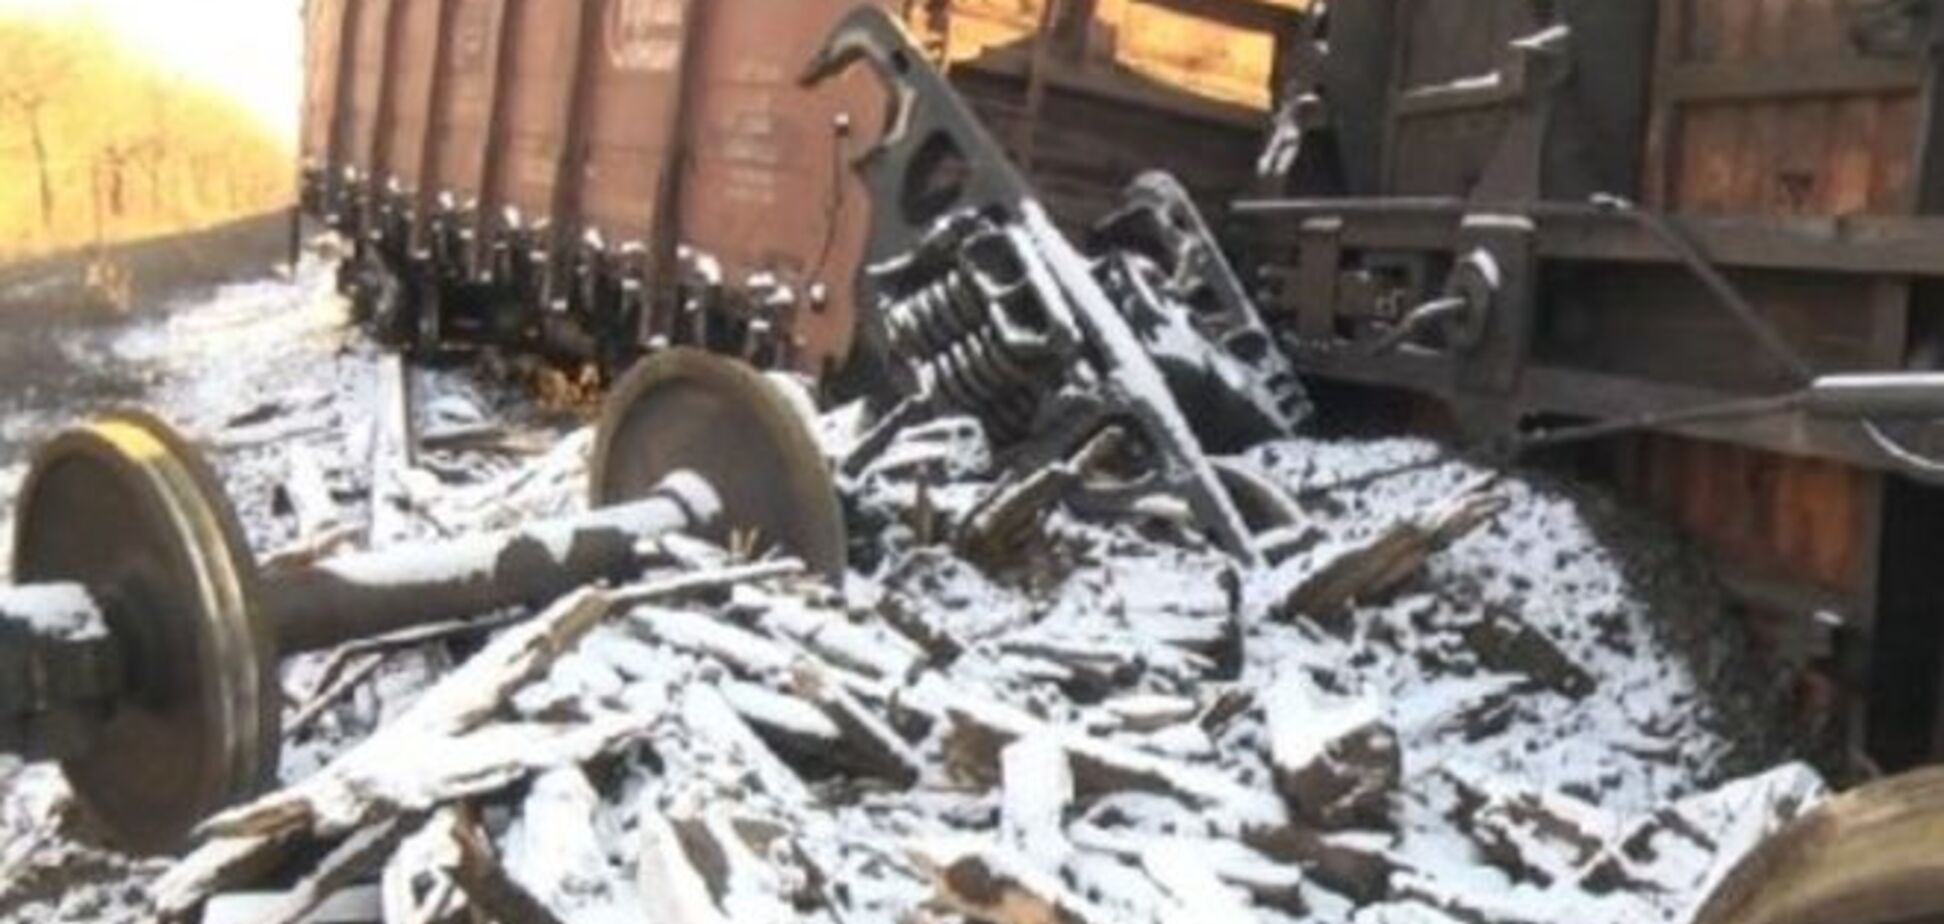 Вблизи Еленовки под тепловозом грузового поезда прогремел взрыв